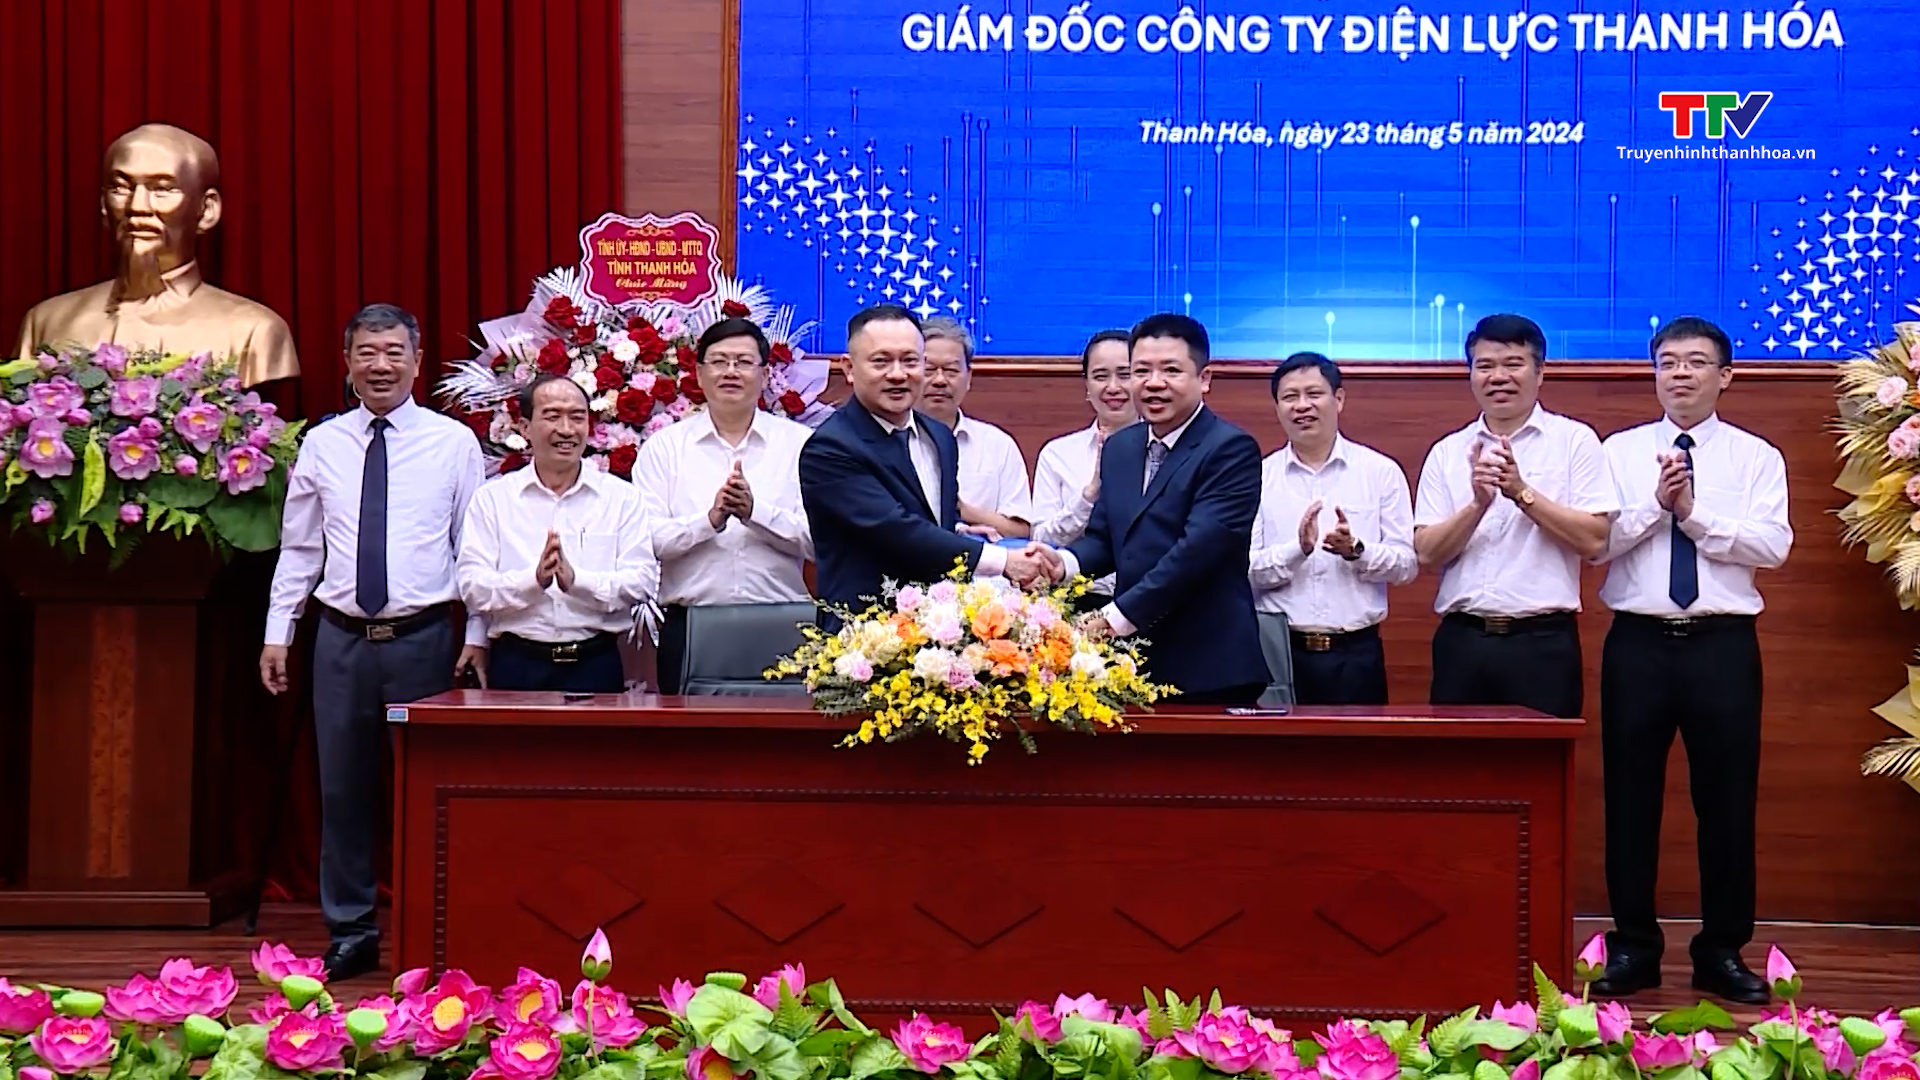 Công bố quyết định bổ nhiệm Giám đốc Công ty Điện lực Thanh Hoá- Ảnh 4.